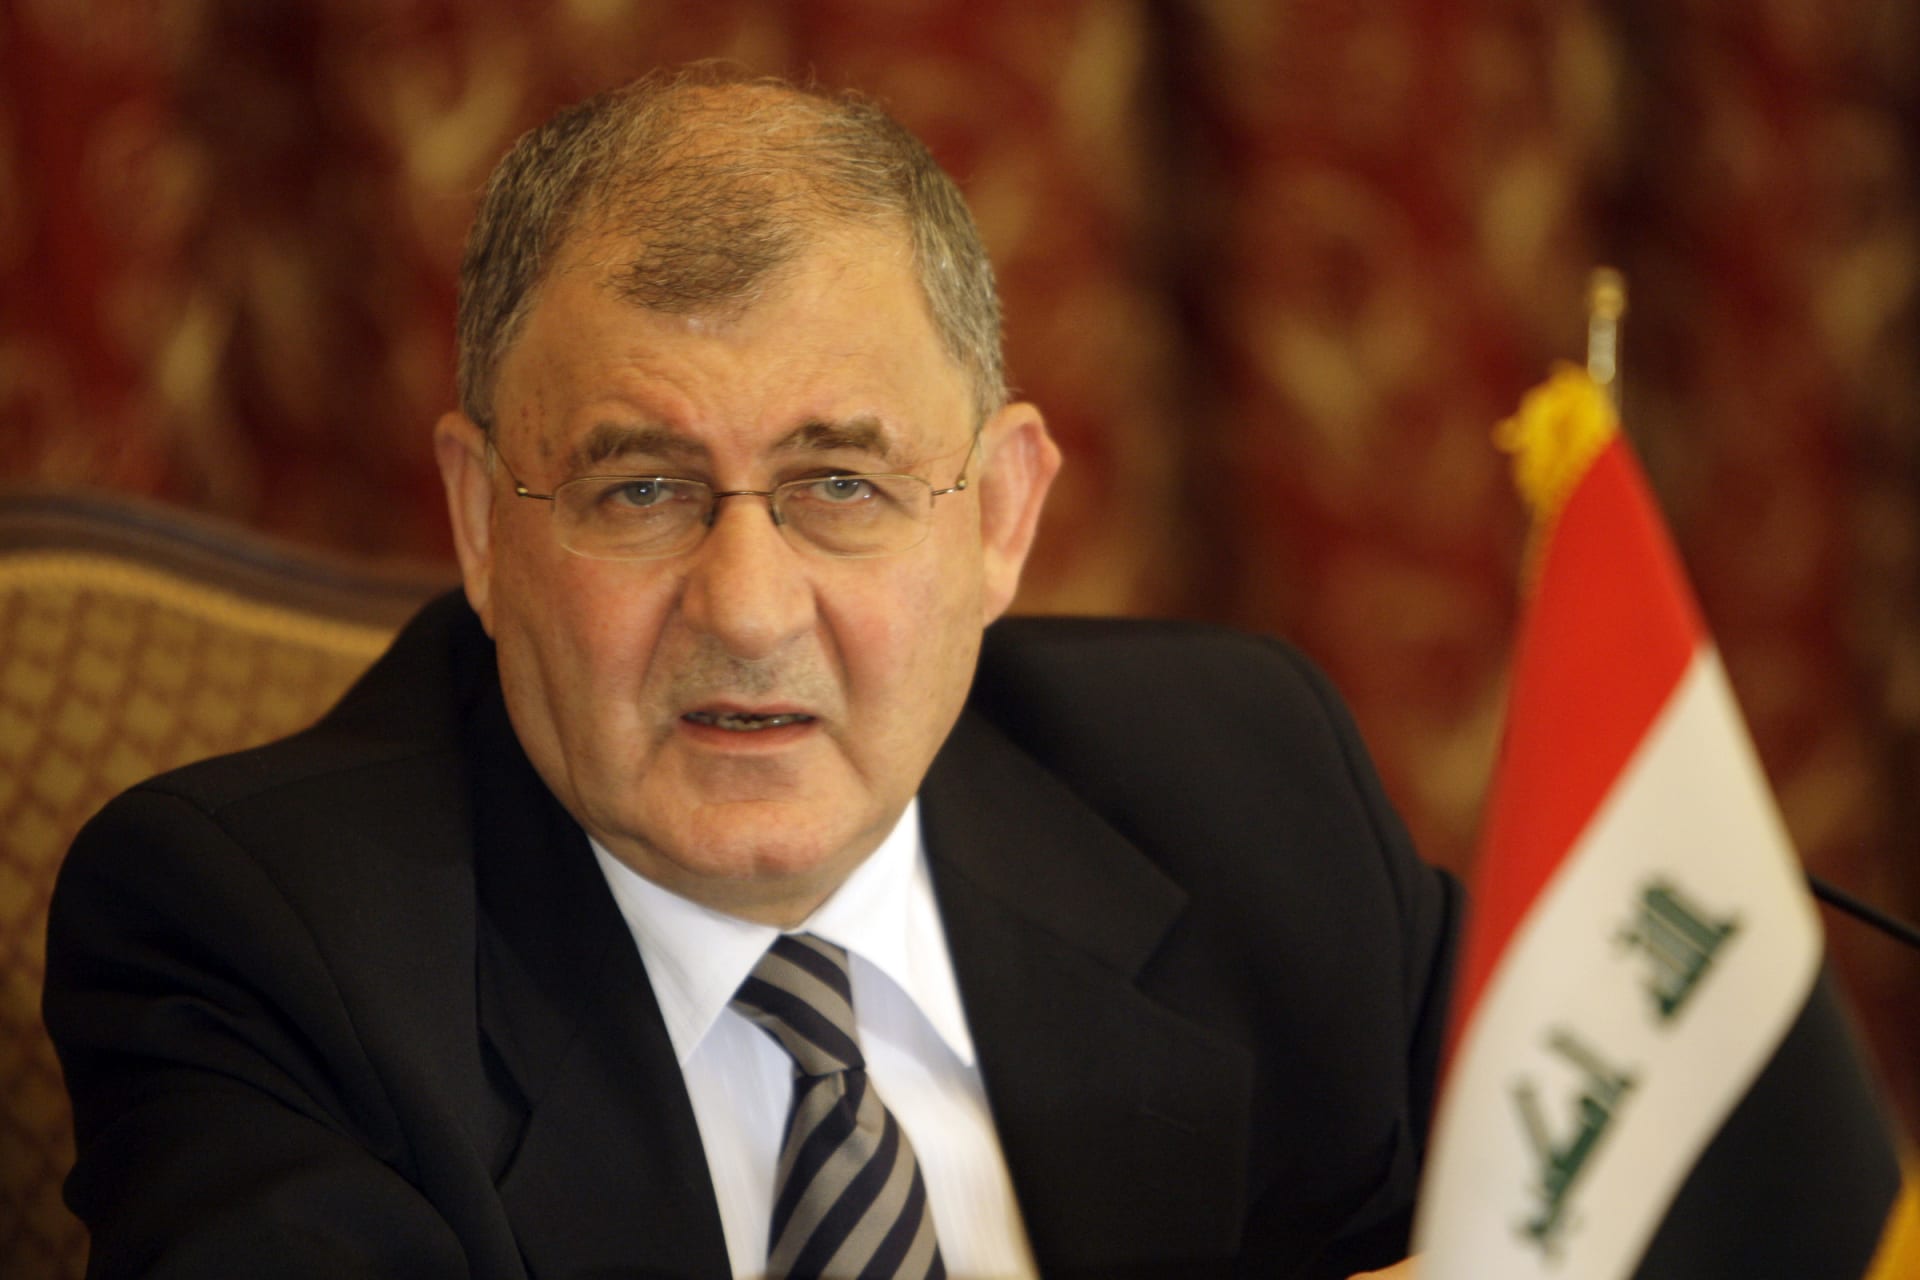 البرلمان العراقي ينتخب عبداللطيف رشيد رئيسا للبلاد خلفا لبرهم صالح